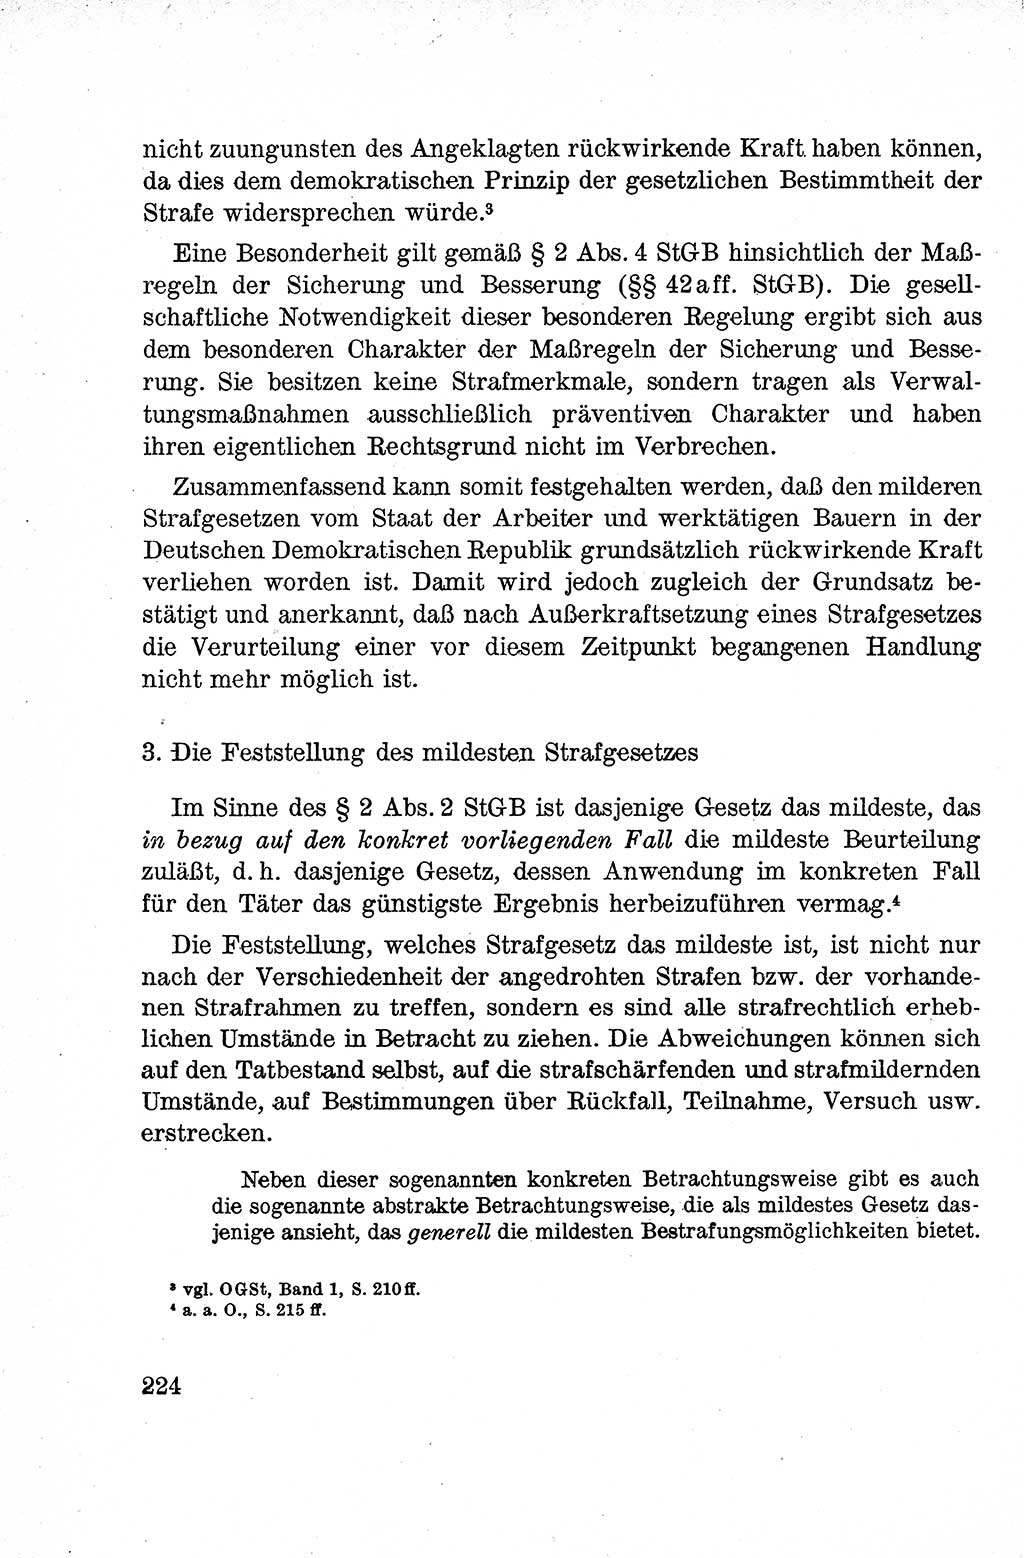 Lehrbuch des Strafrechts der Deutschen Demokratischen Republik (DDR), Allgemeiner Teil 1959, Seite 224 (Lb. Strafr. DDR AT 1959, S. 224)